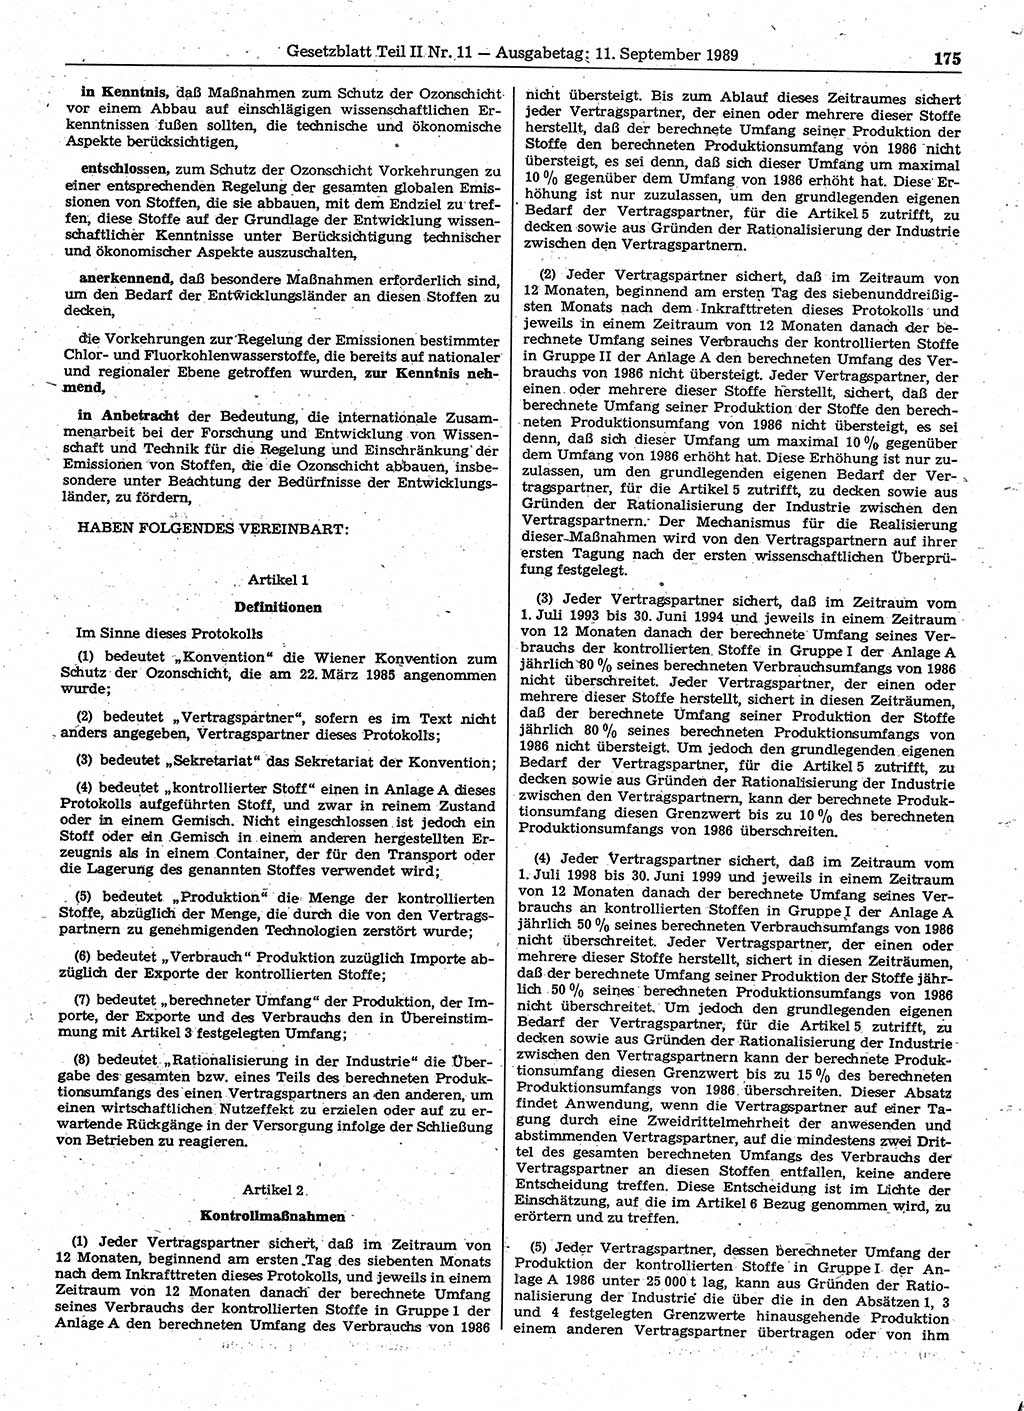 Gesetzblatt (GBl.) der Deutschen Demokratischen Republik (DDR) Teil ⅠⅠ 1989, Seite 175 (GBl. DDR ⅠⅠ 1989, S. 175)